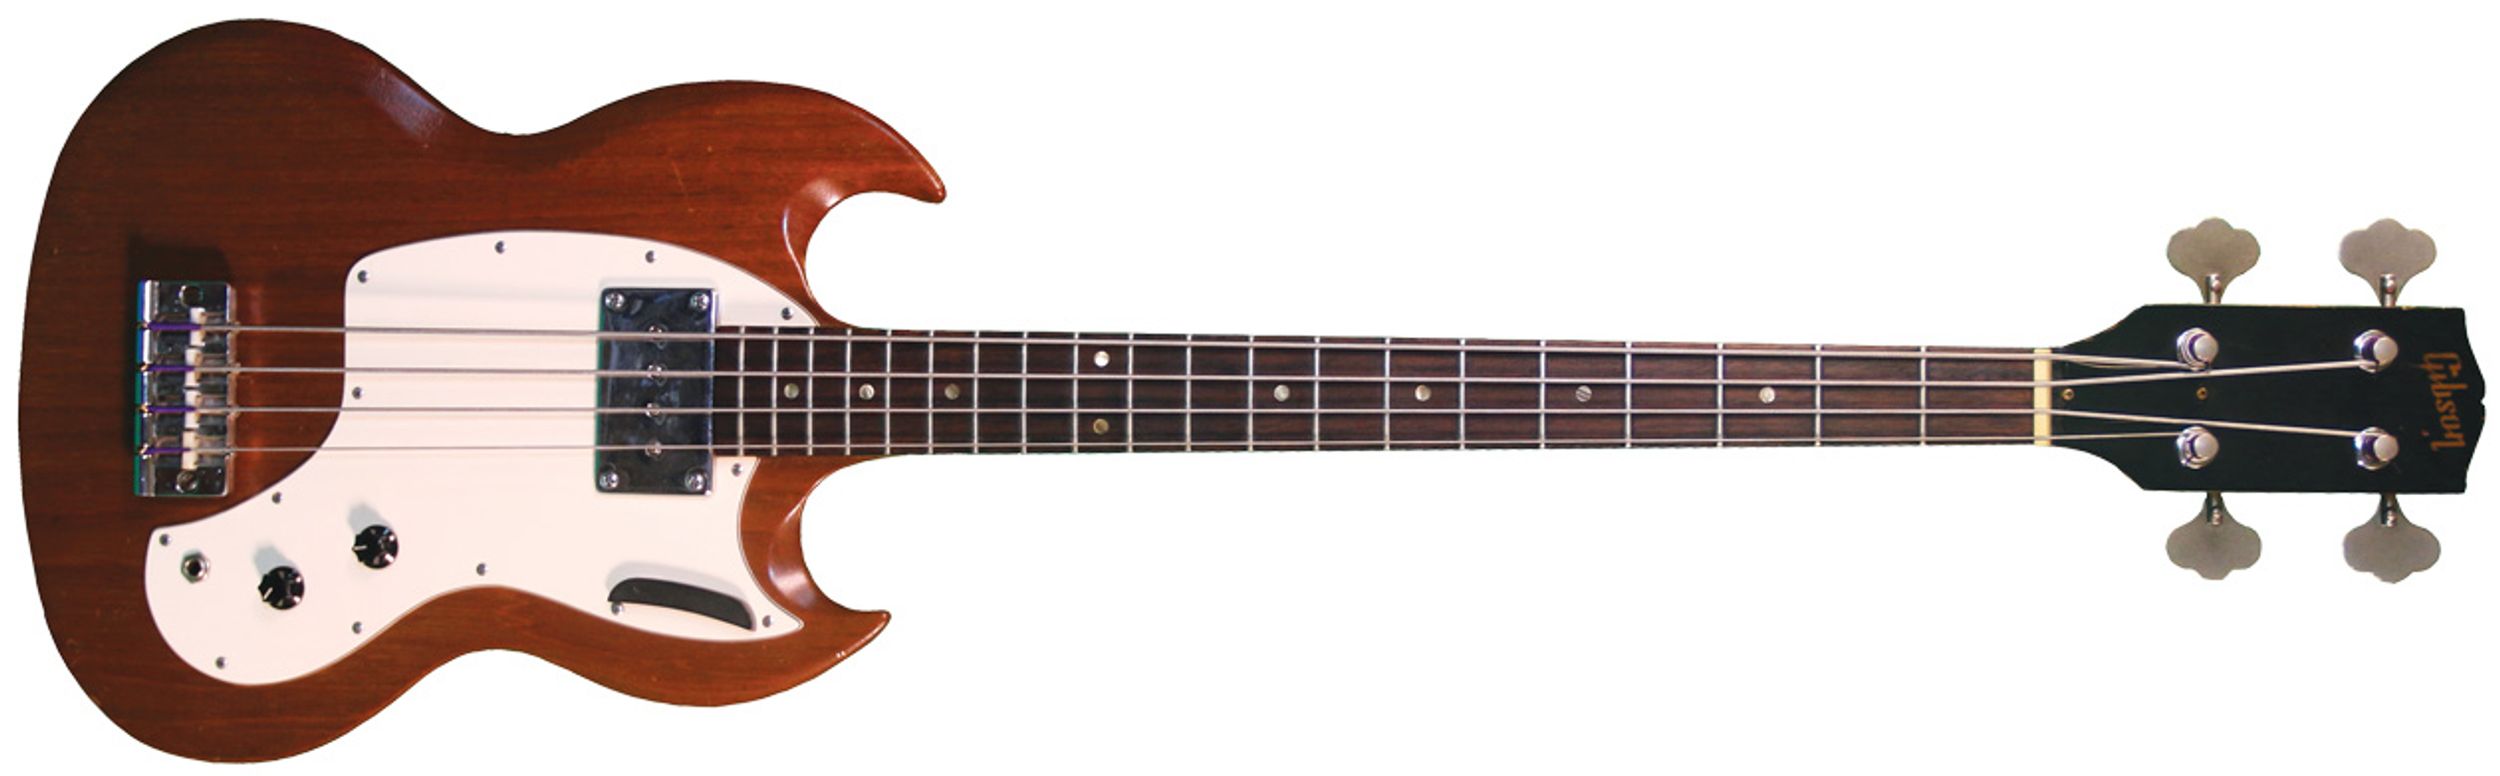 Vintage Vault: 1968 Gibson Melody Maker Bass